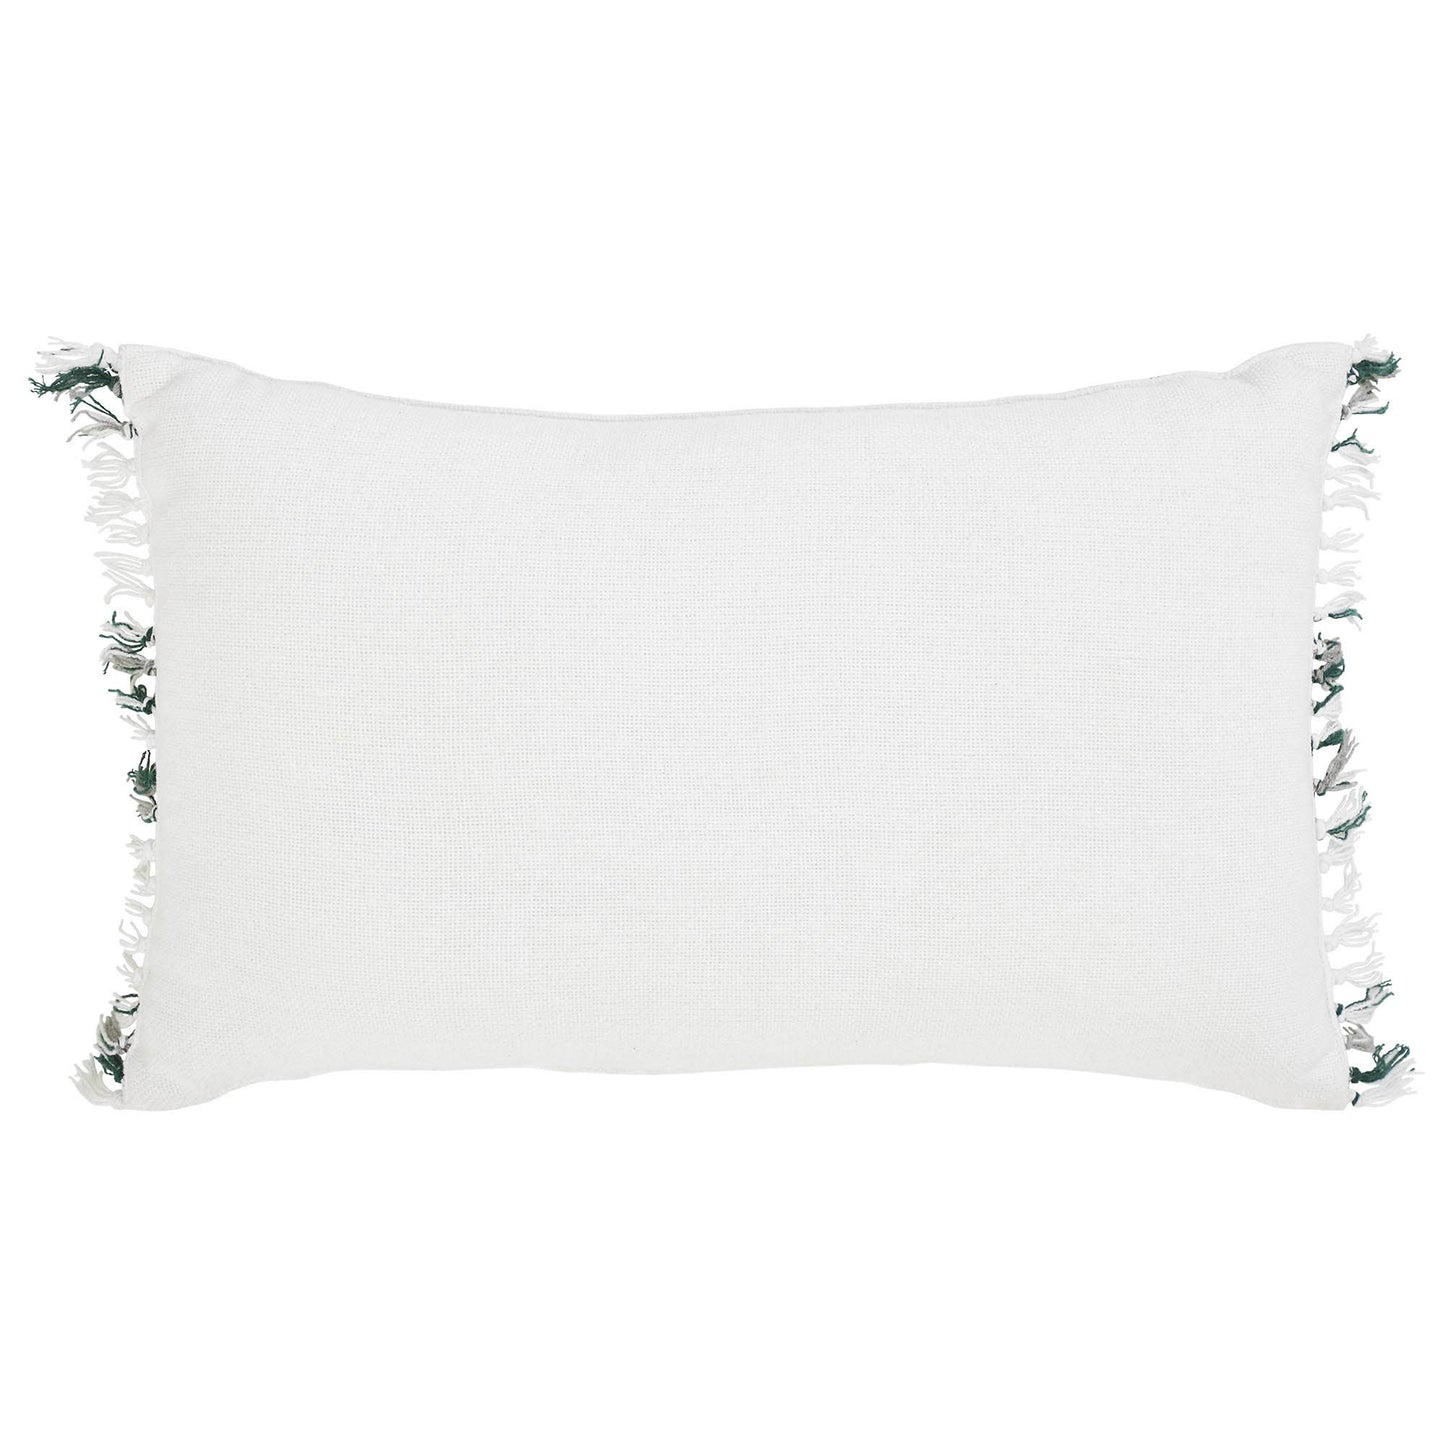 Harper Plaid Green White Pillow Fringed 14"x22"